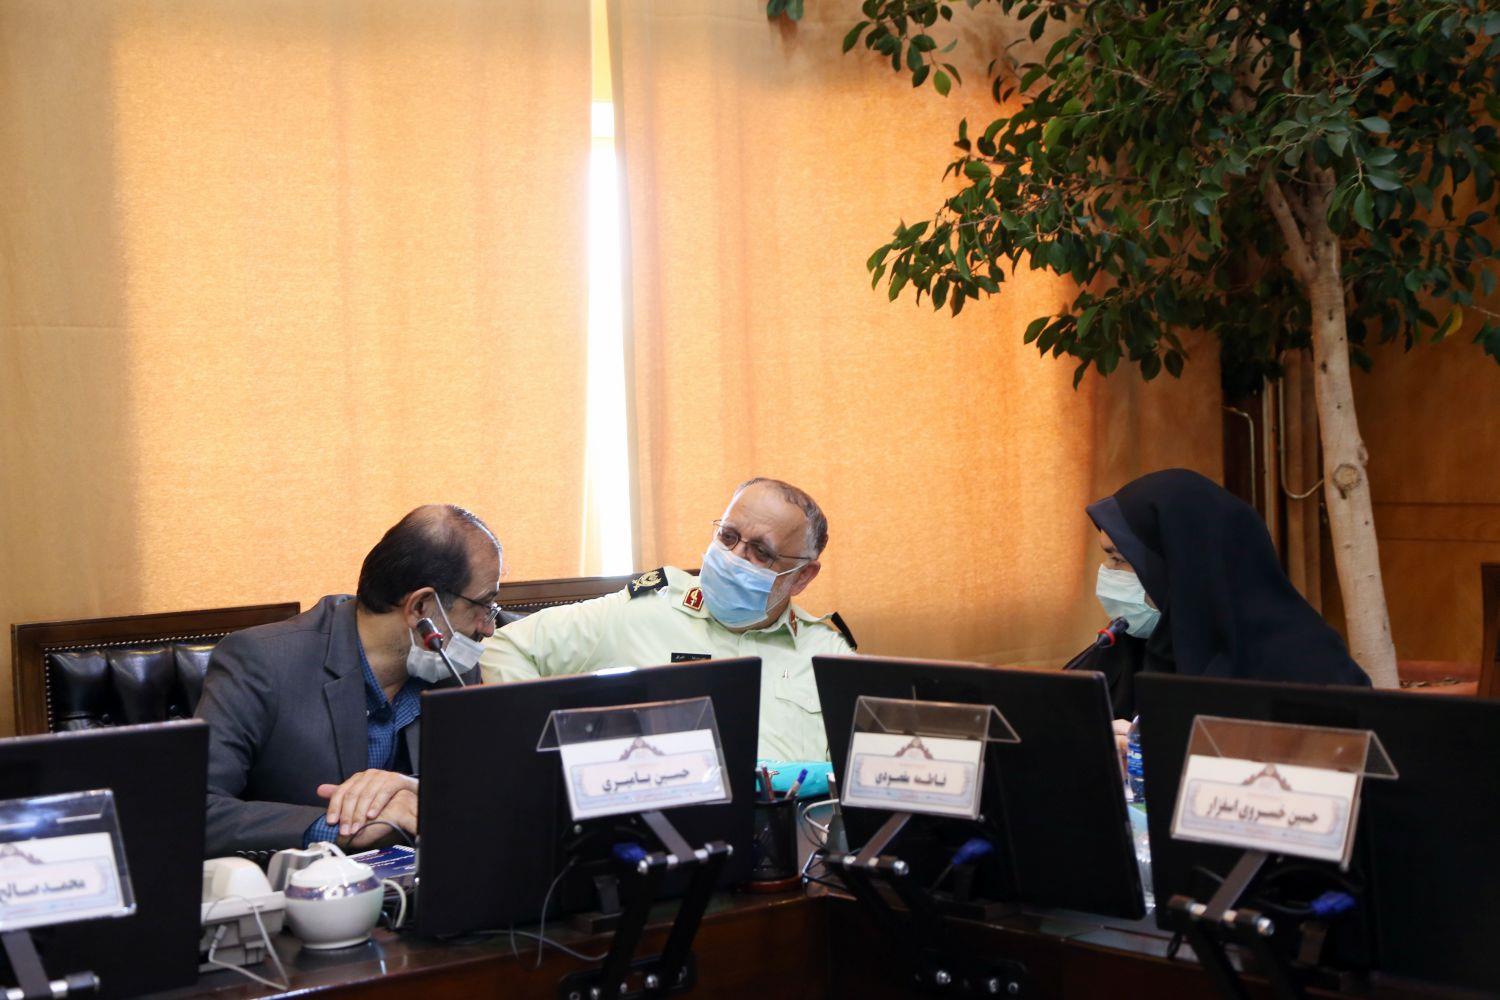 نشست کمیسیون امور داخلی کشور و شوراهای مجلس به ریاست محمدصالح جوکار